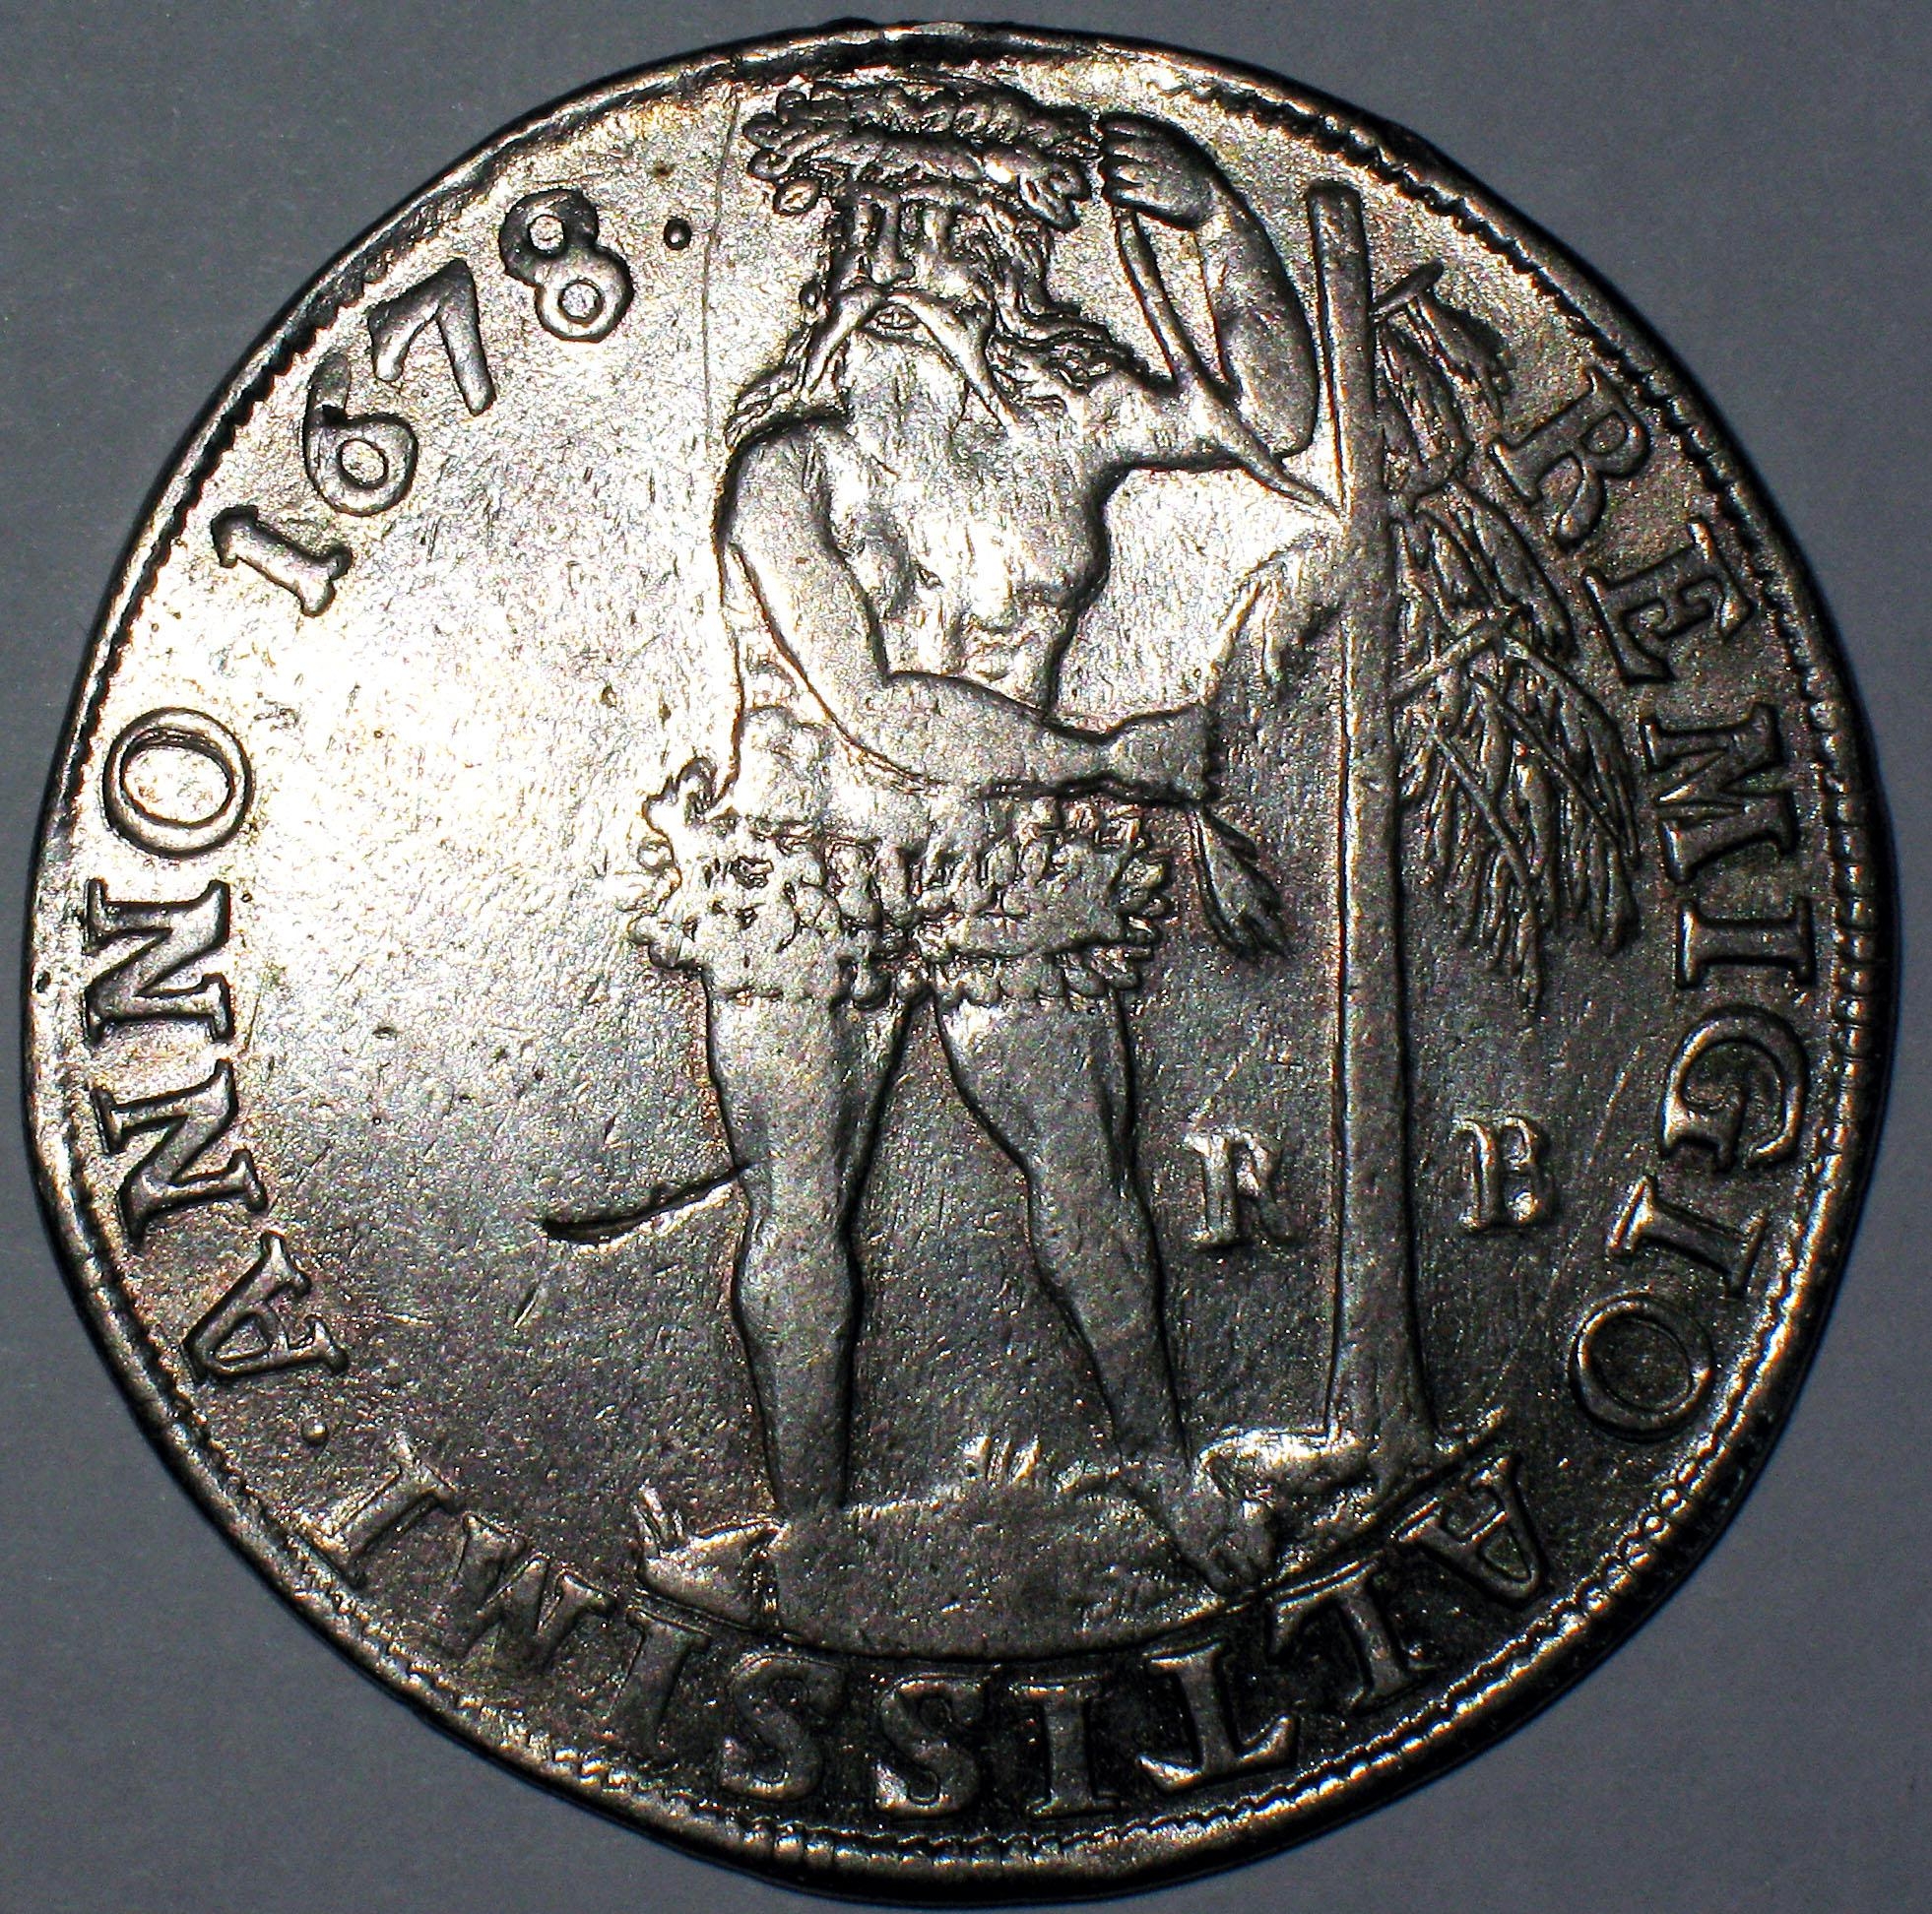 Римский солид 1678 года в валютной системе